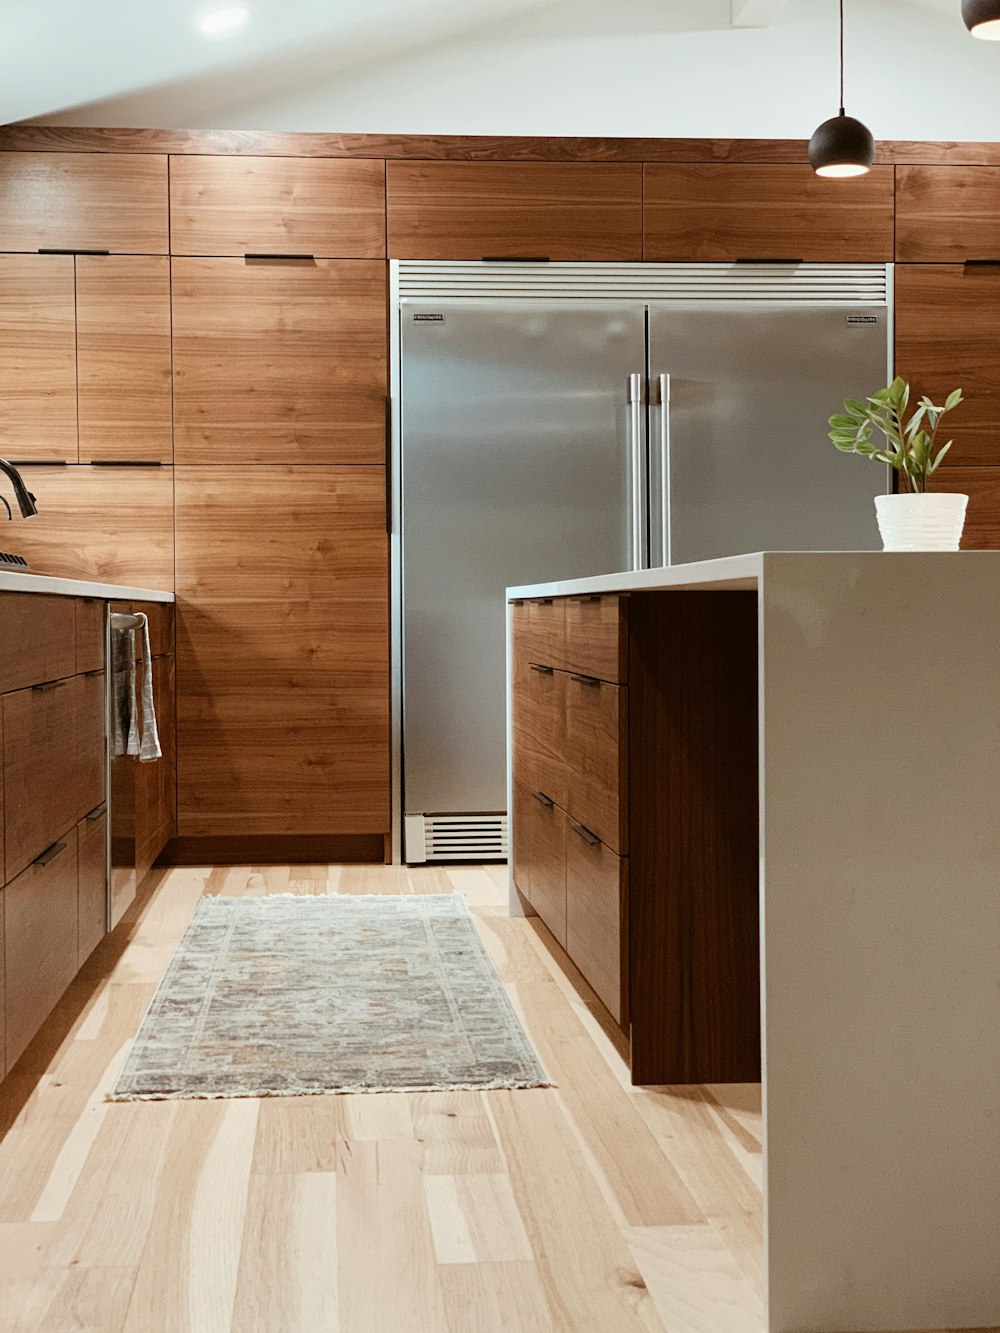 Mueble de cocina de madera marrón y blanco